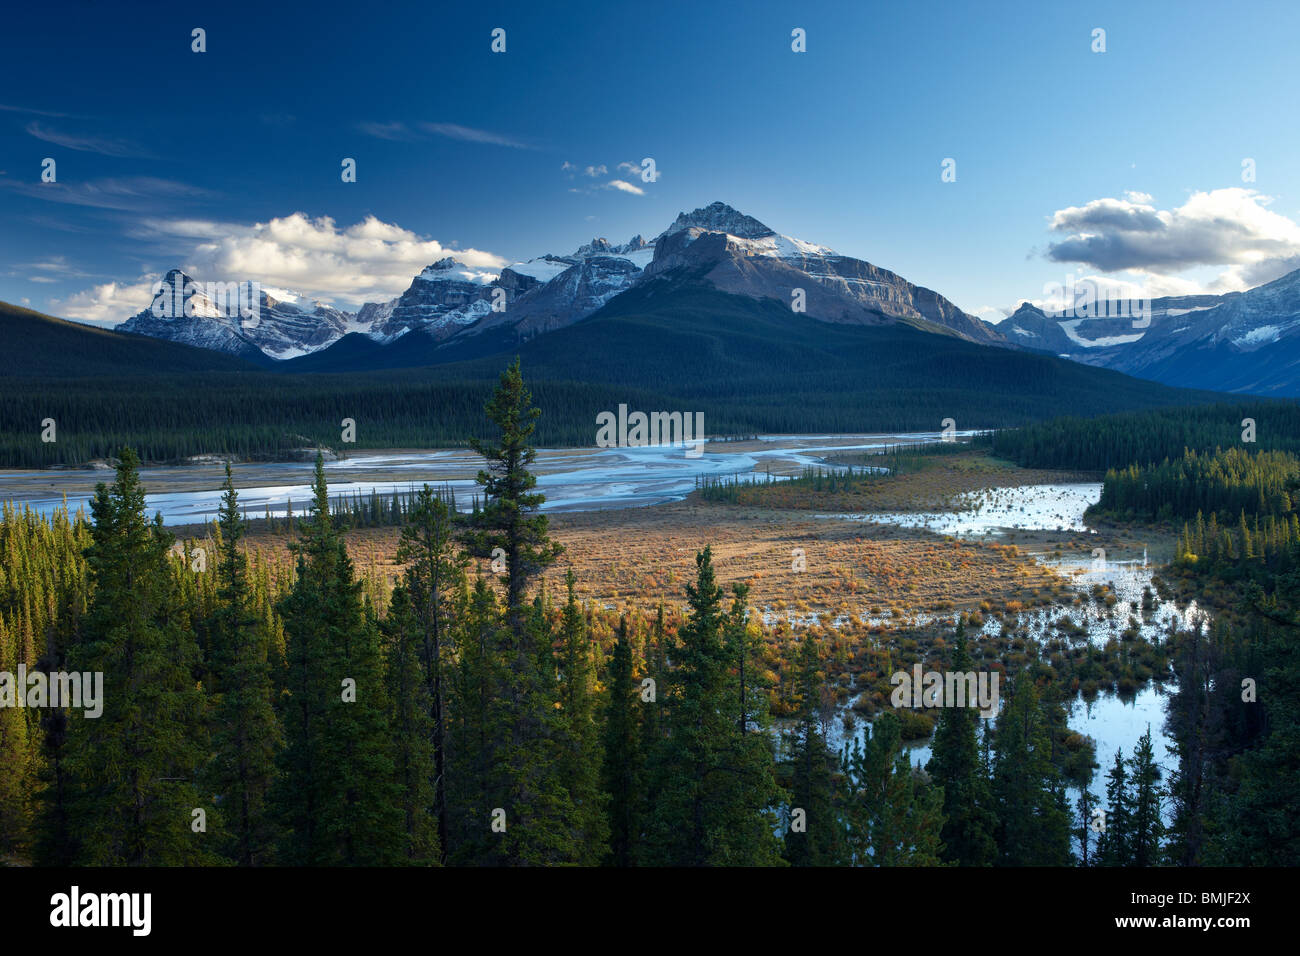 Howse Fluss und werden Berge, Saskatchewan Crossing, Banff Nationalpark, Alberta, Kanada Stockfoto